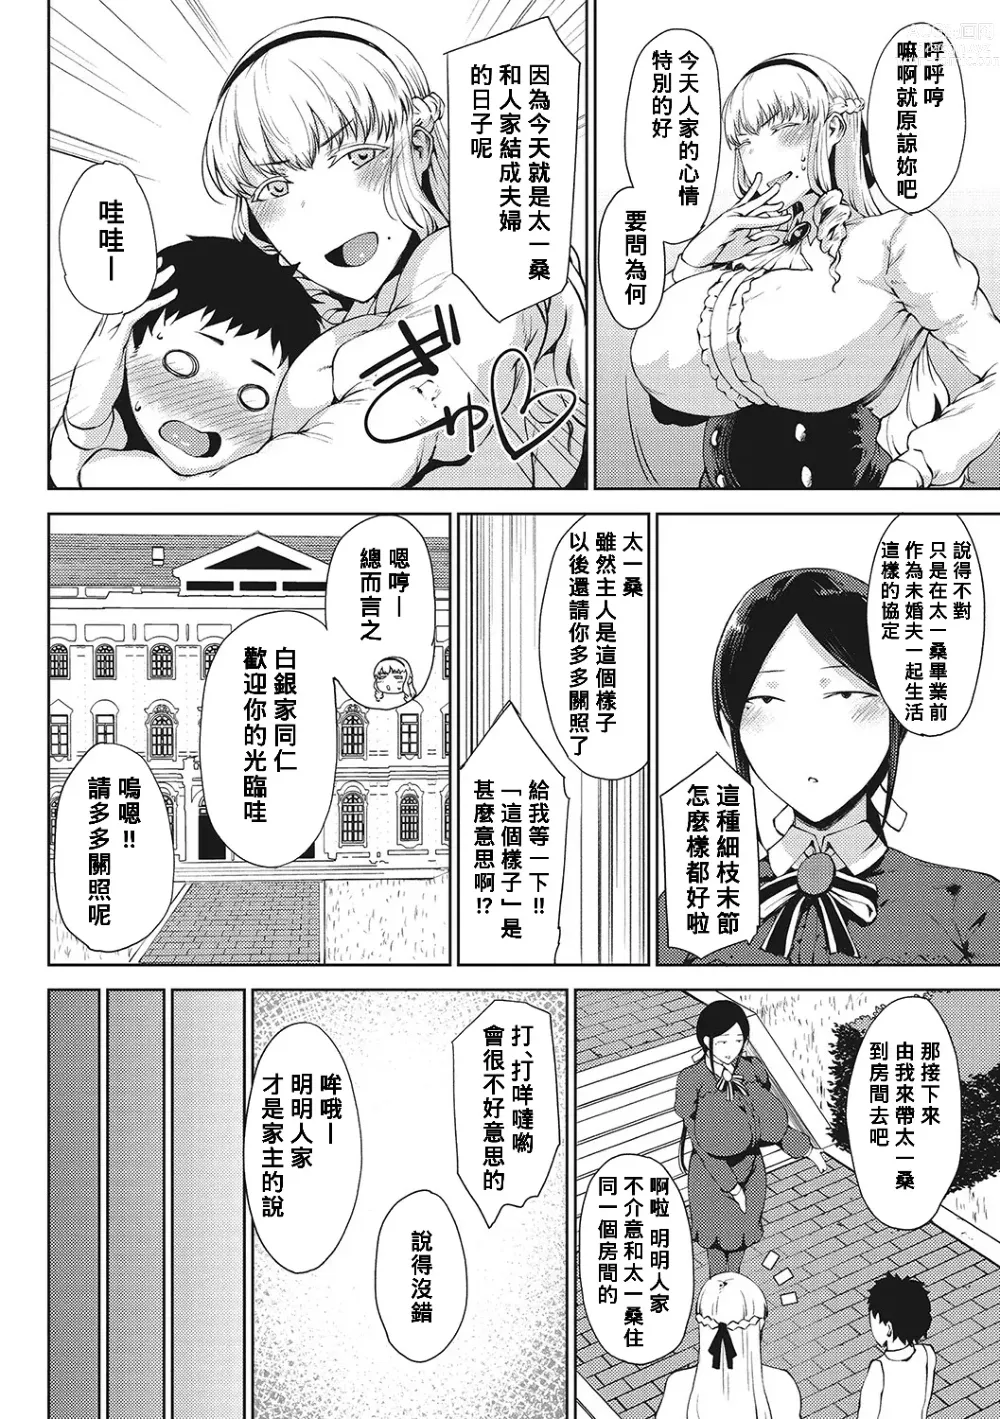 Page 4 of manga Saitan no Yakusoku Zenpen